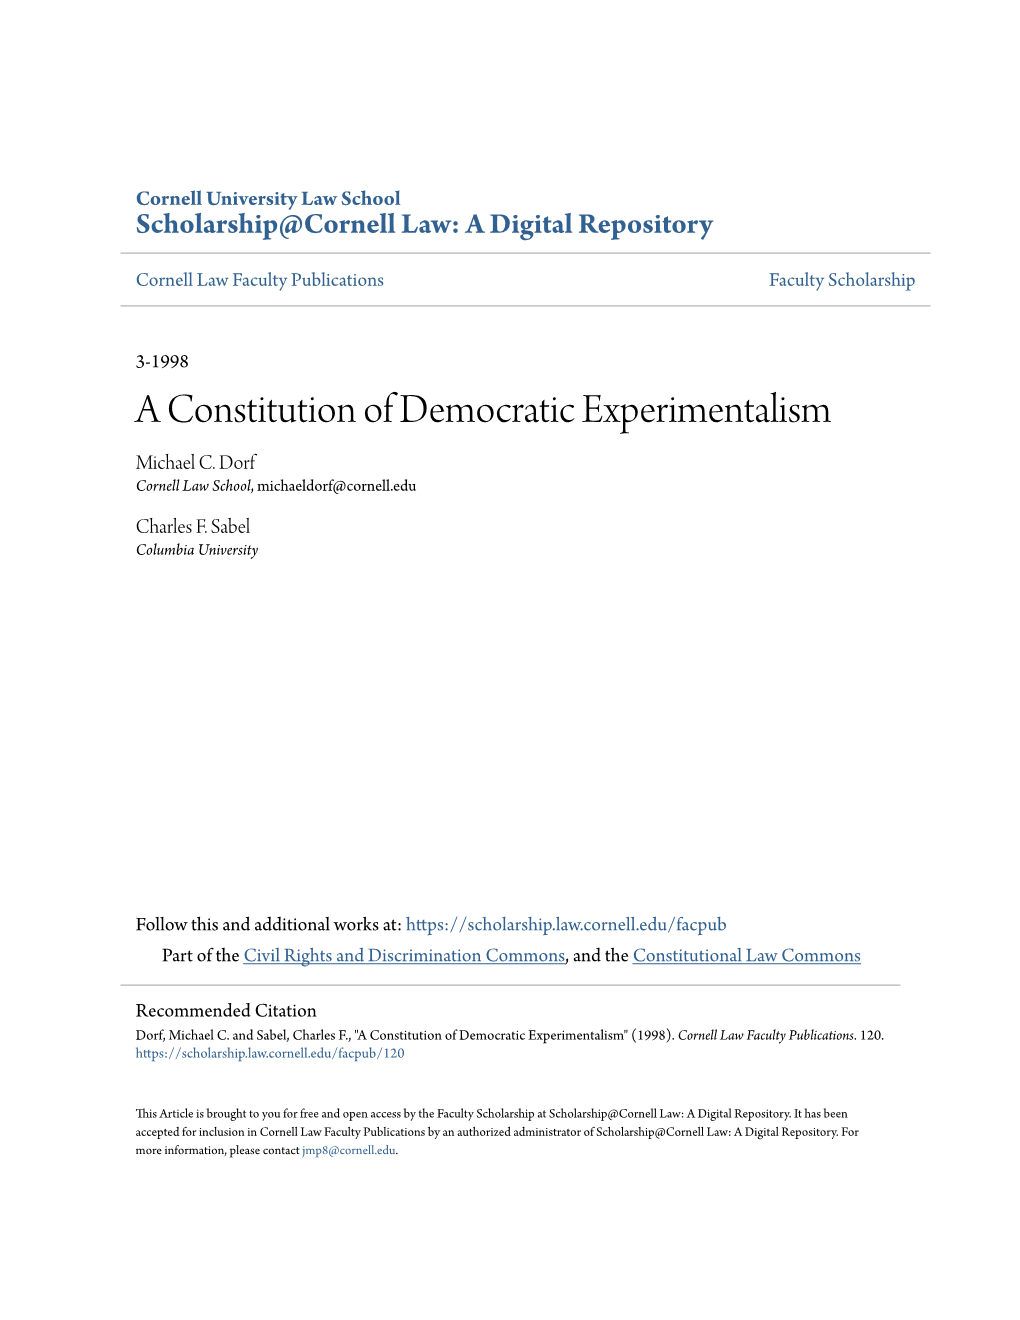 A Constitution of Democratic Experimentalism Michael C